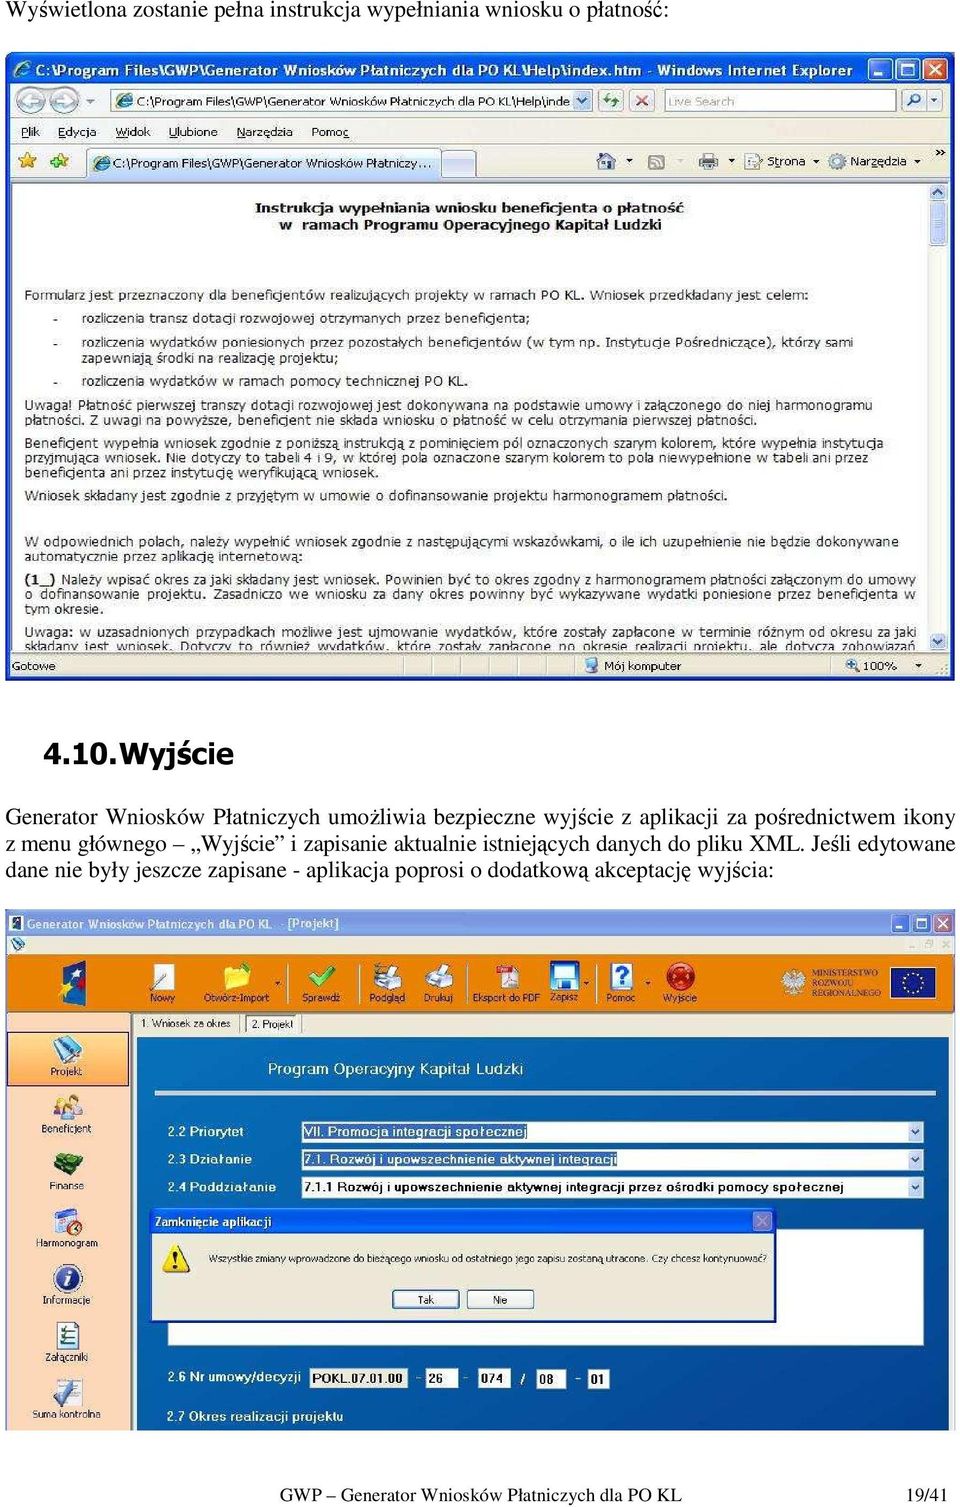 ikony z menu głównego Wyjście i zapisanie aktualnie istniejących danych do pliku XML.